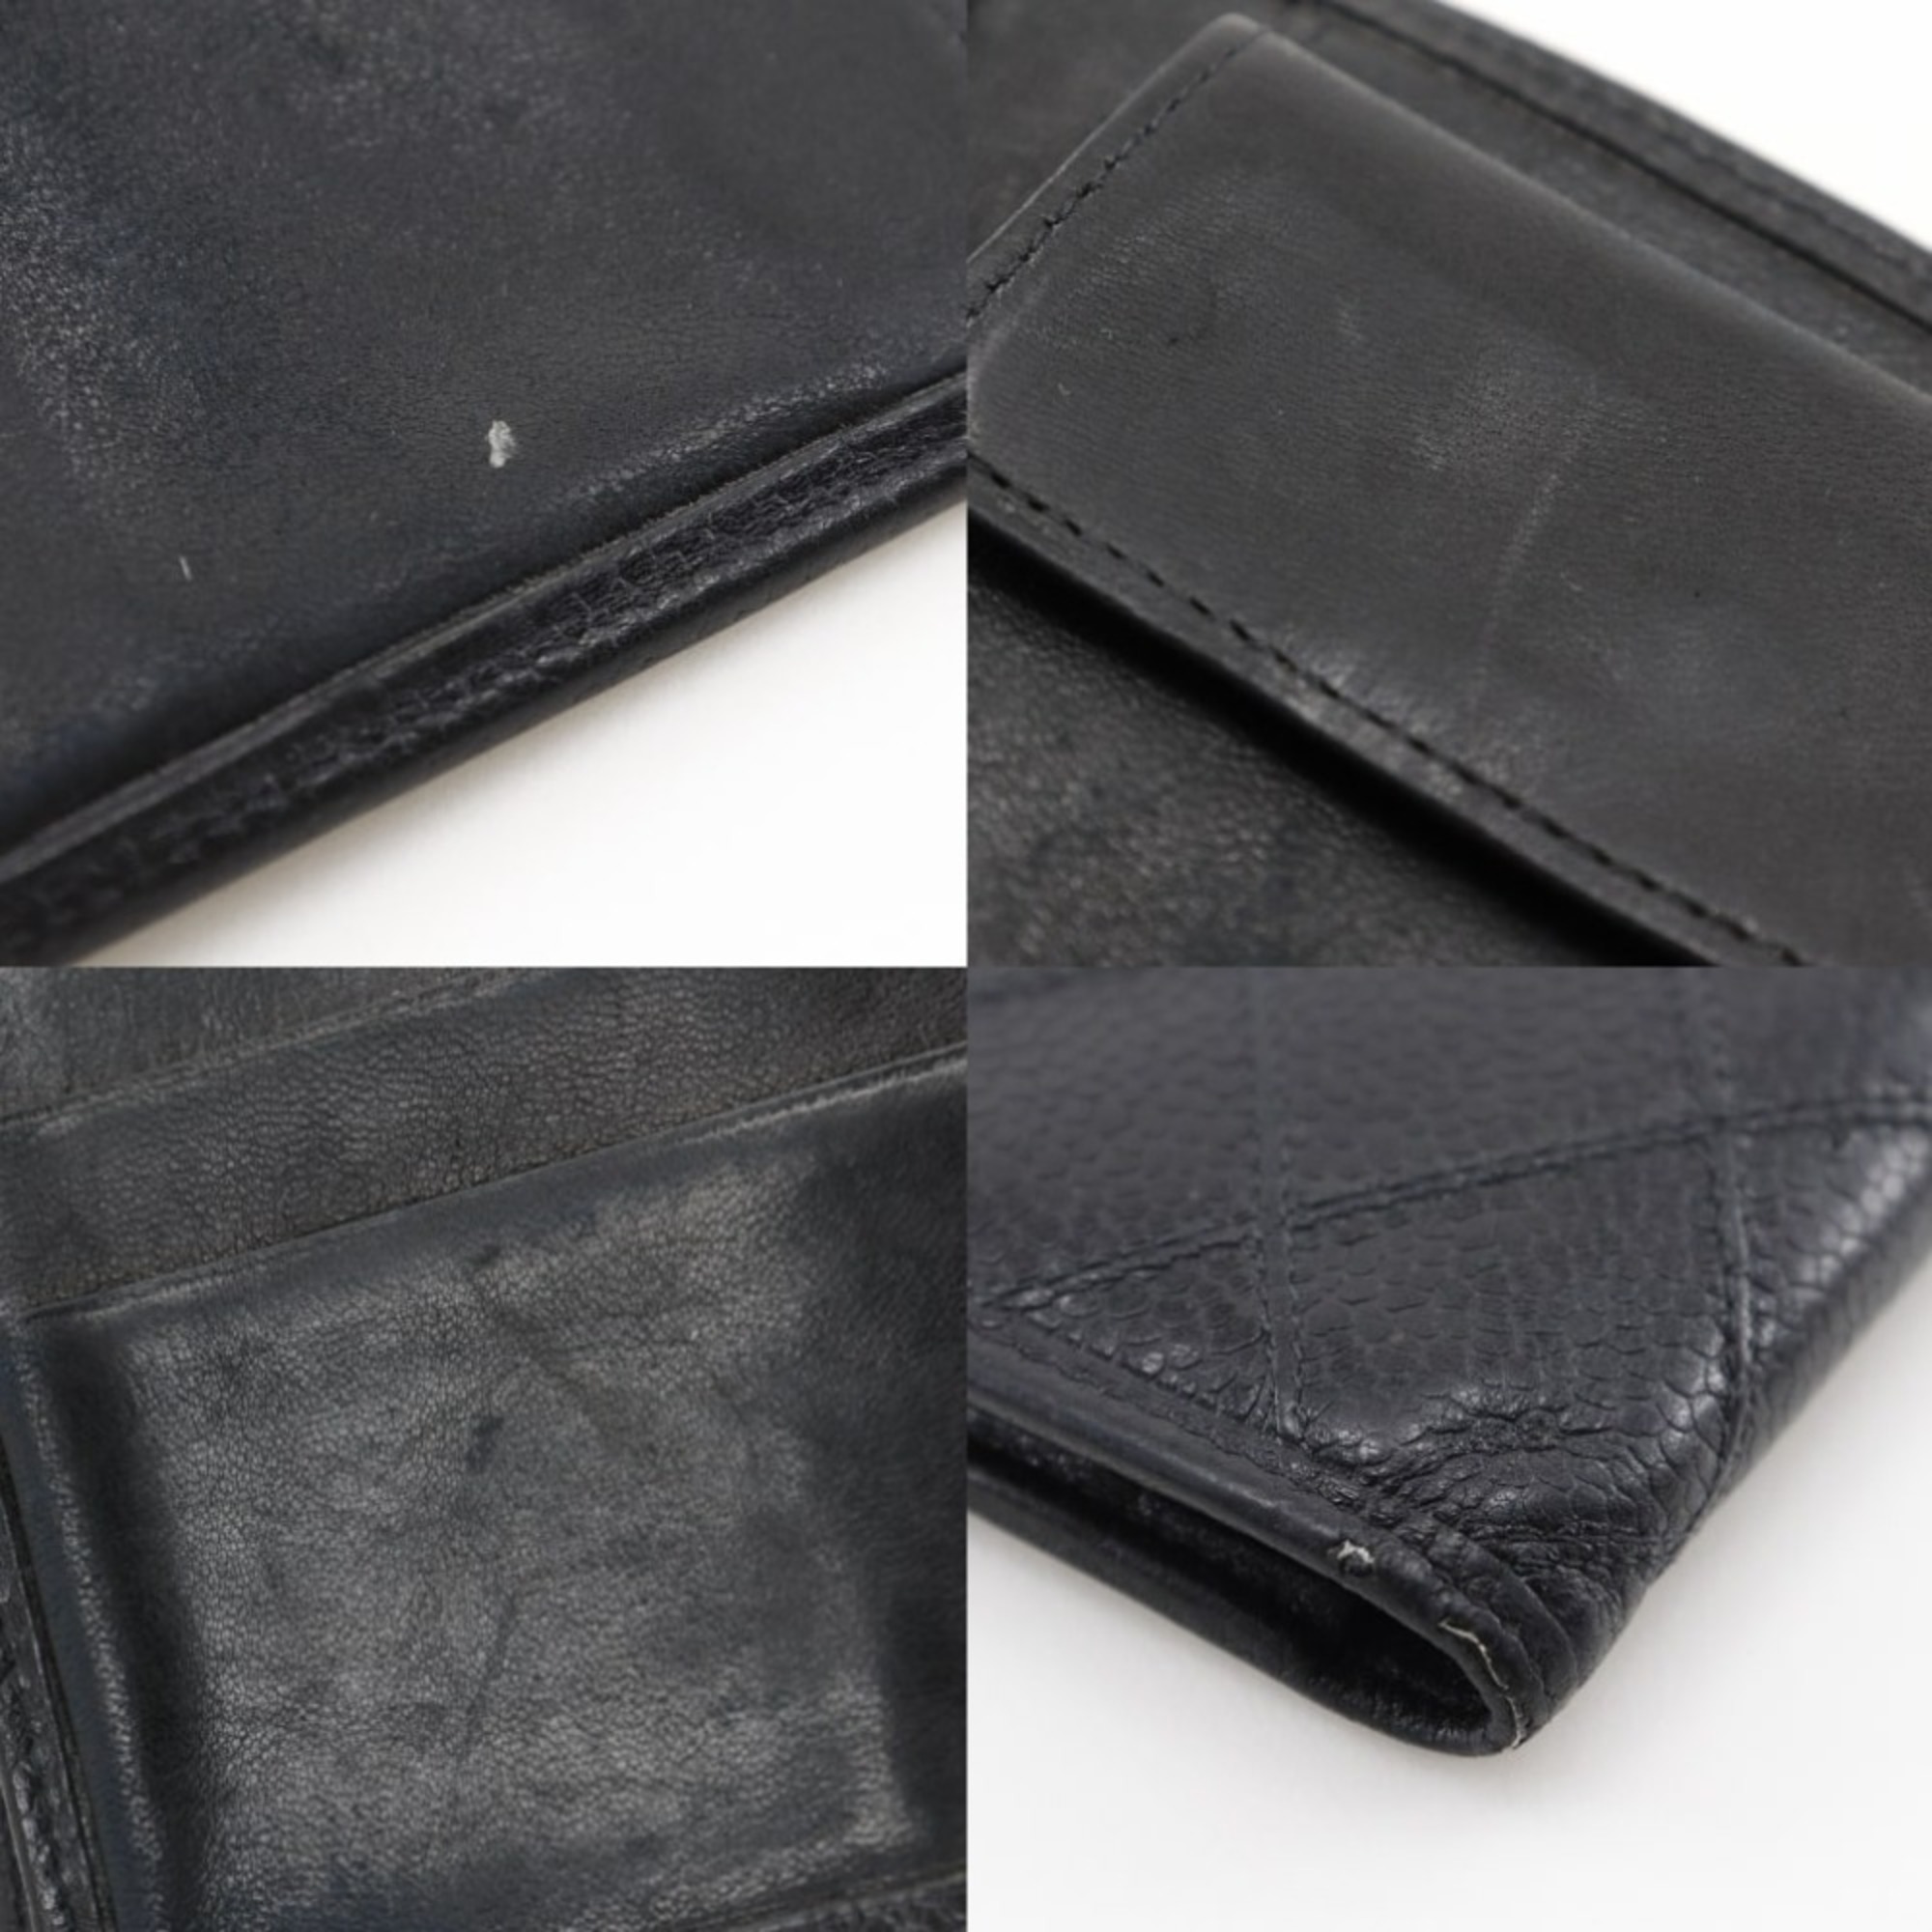 CHANEL Bi-fold Wallet Caviar Skin Women's I131824084